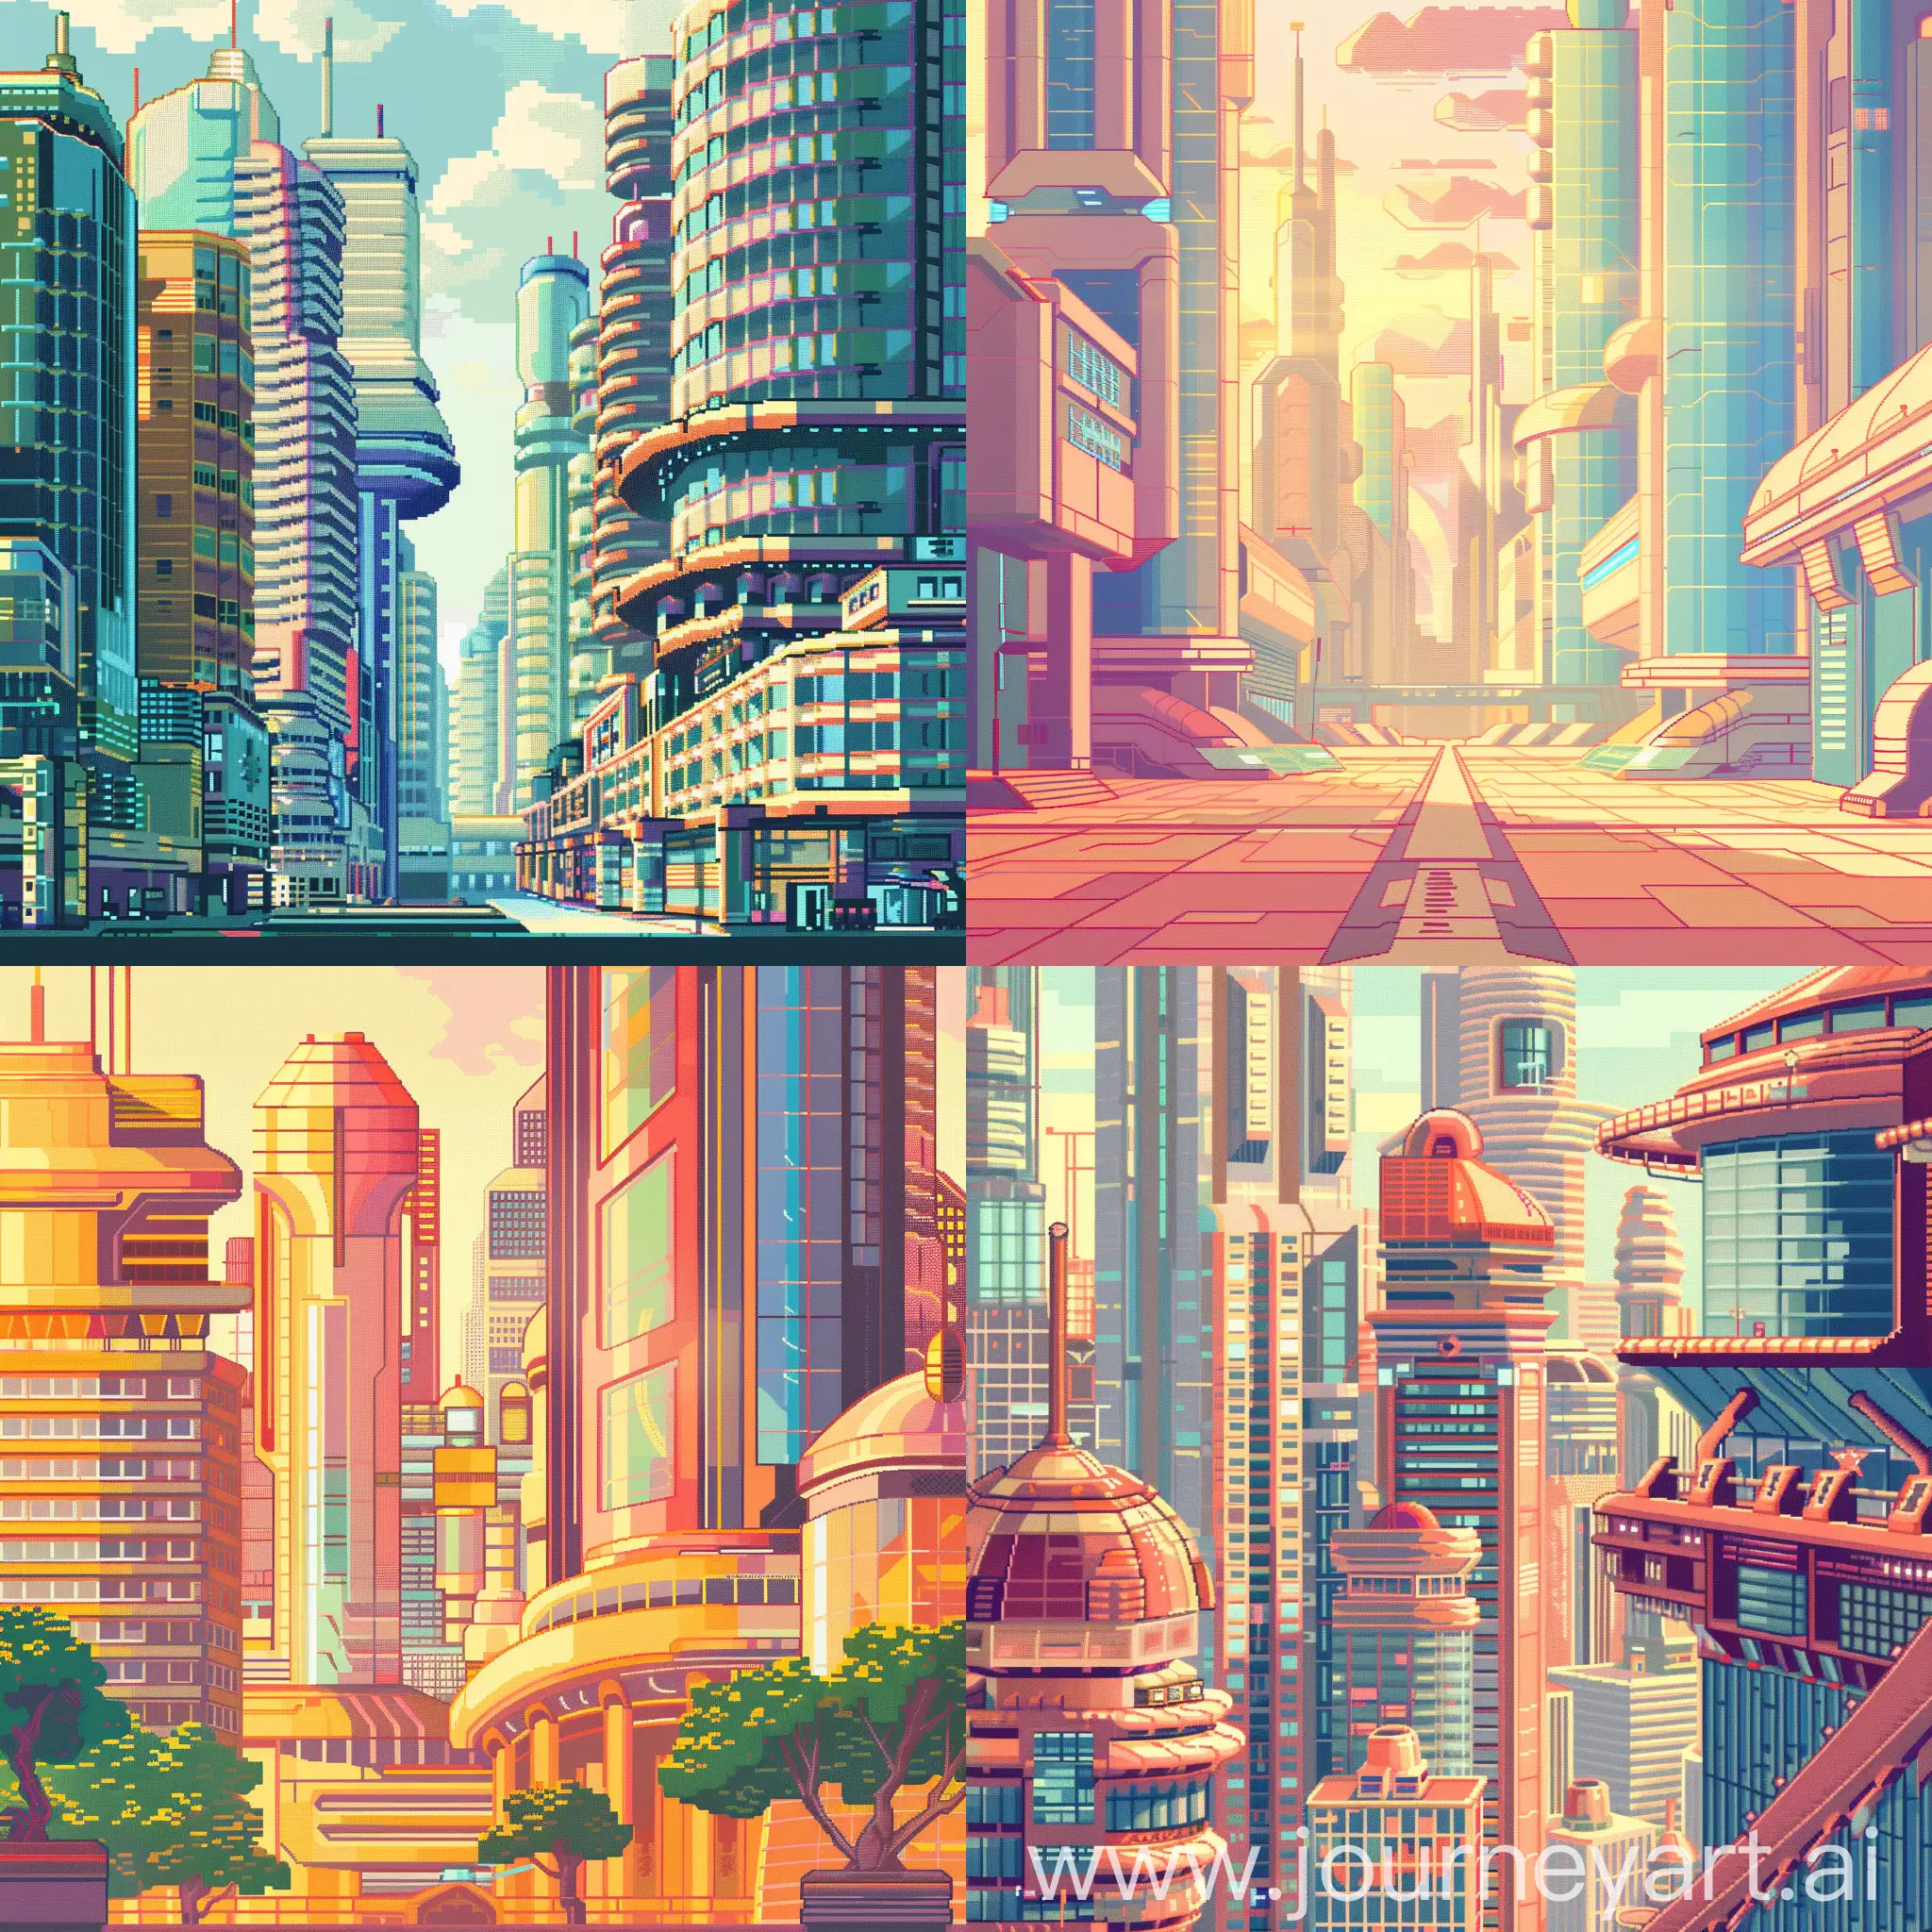 Futuristic-USSR-Cityscape-Gleaming-Buildings-in-Retrofuturistic-Pixel-Art